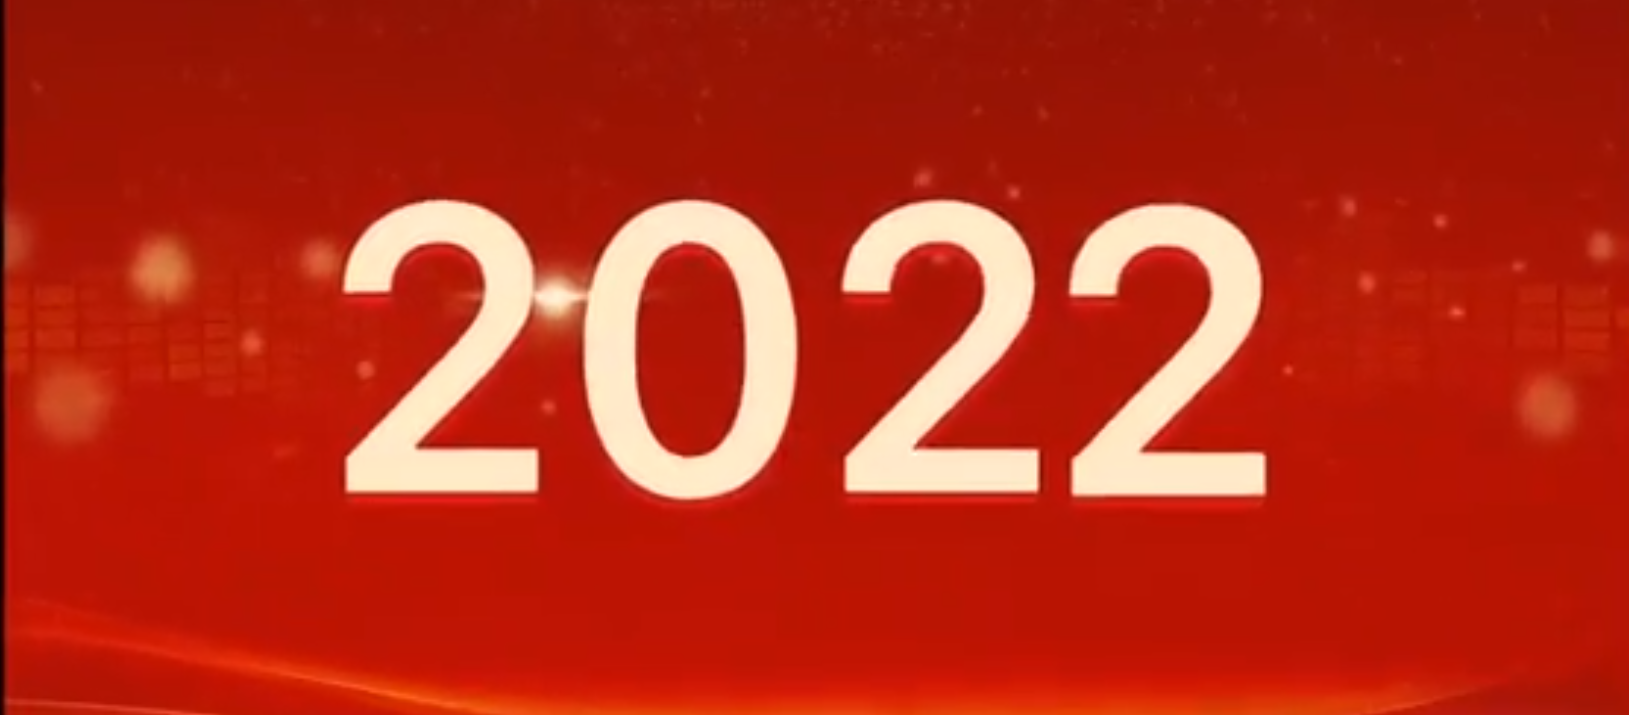 启航新征程<h4>梭哈单机安卓版下载</h4>，扬帆再出发！潞安化机集团2021年度大事记